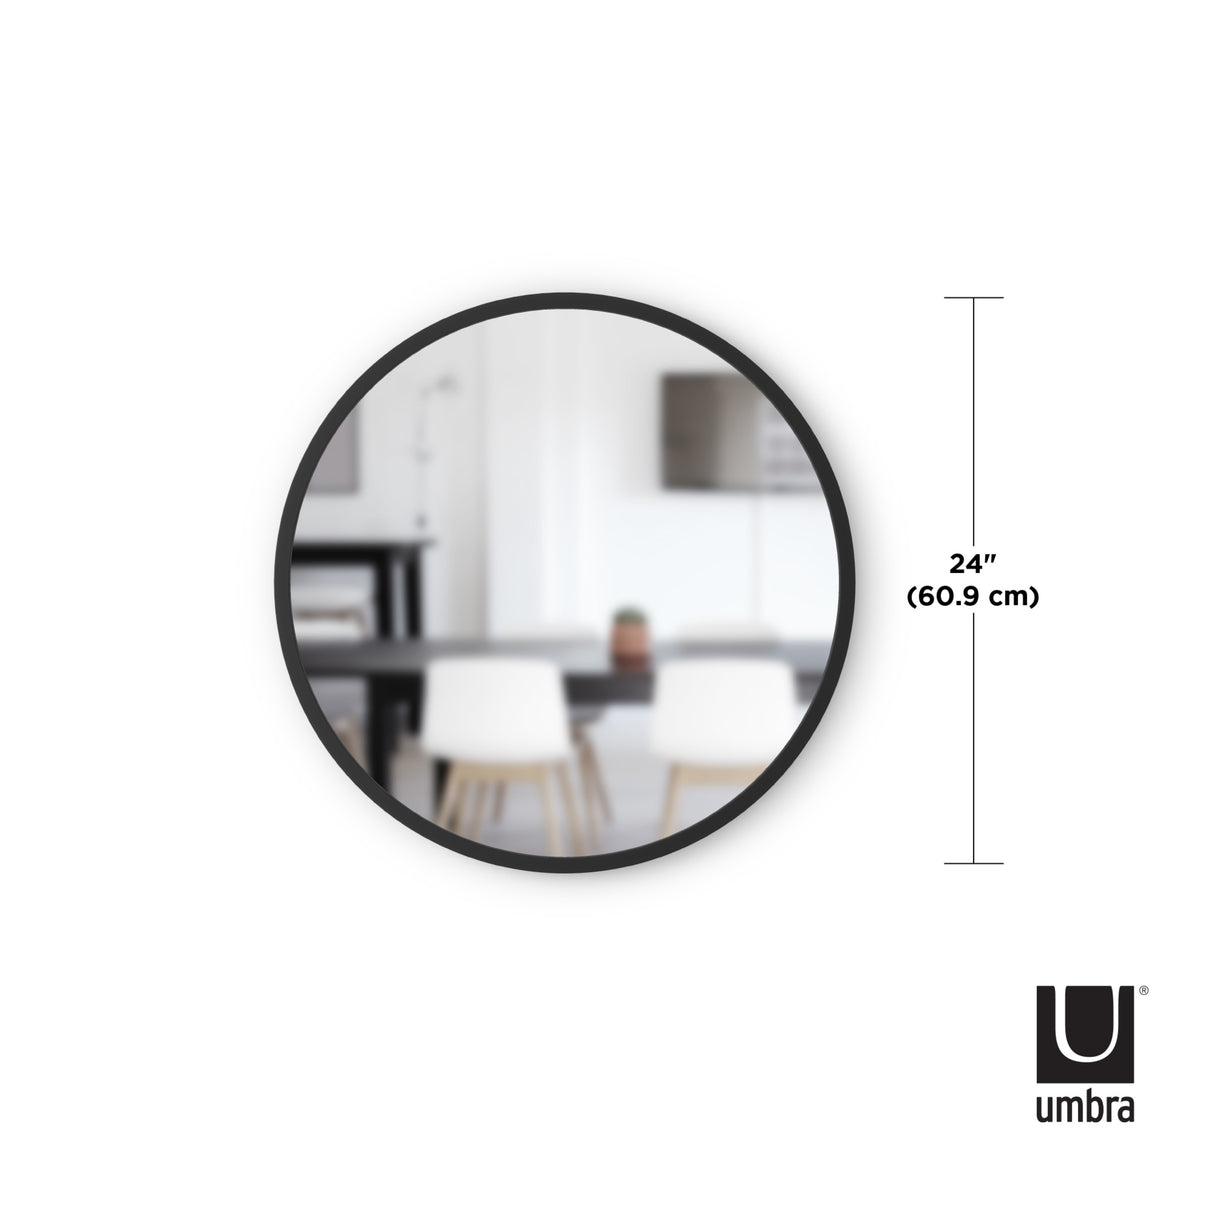 Umbra Hub Mirror 18 - Black